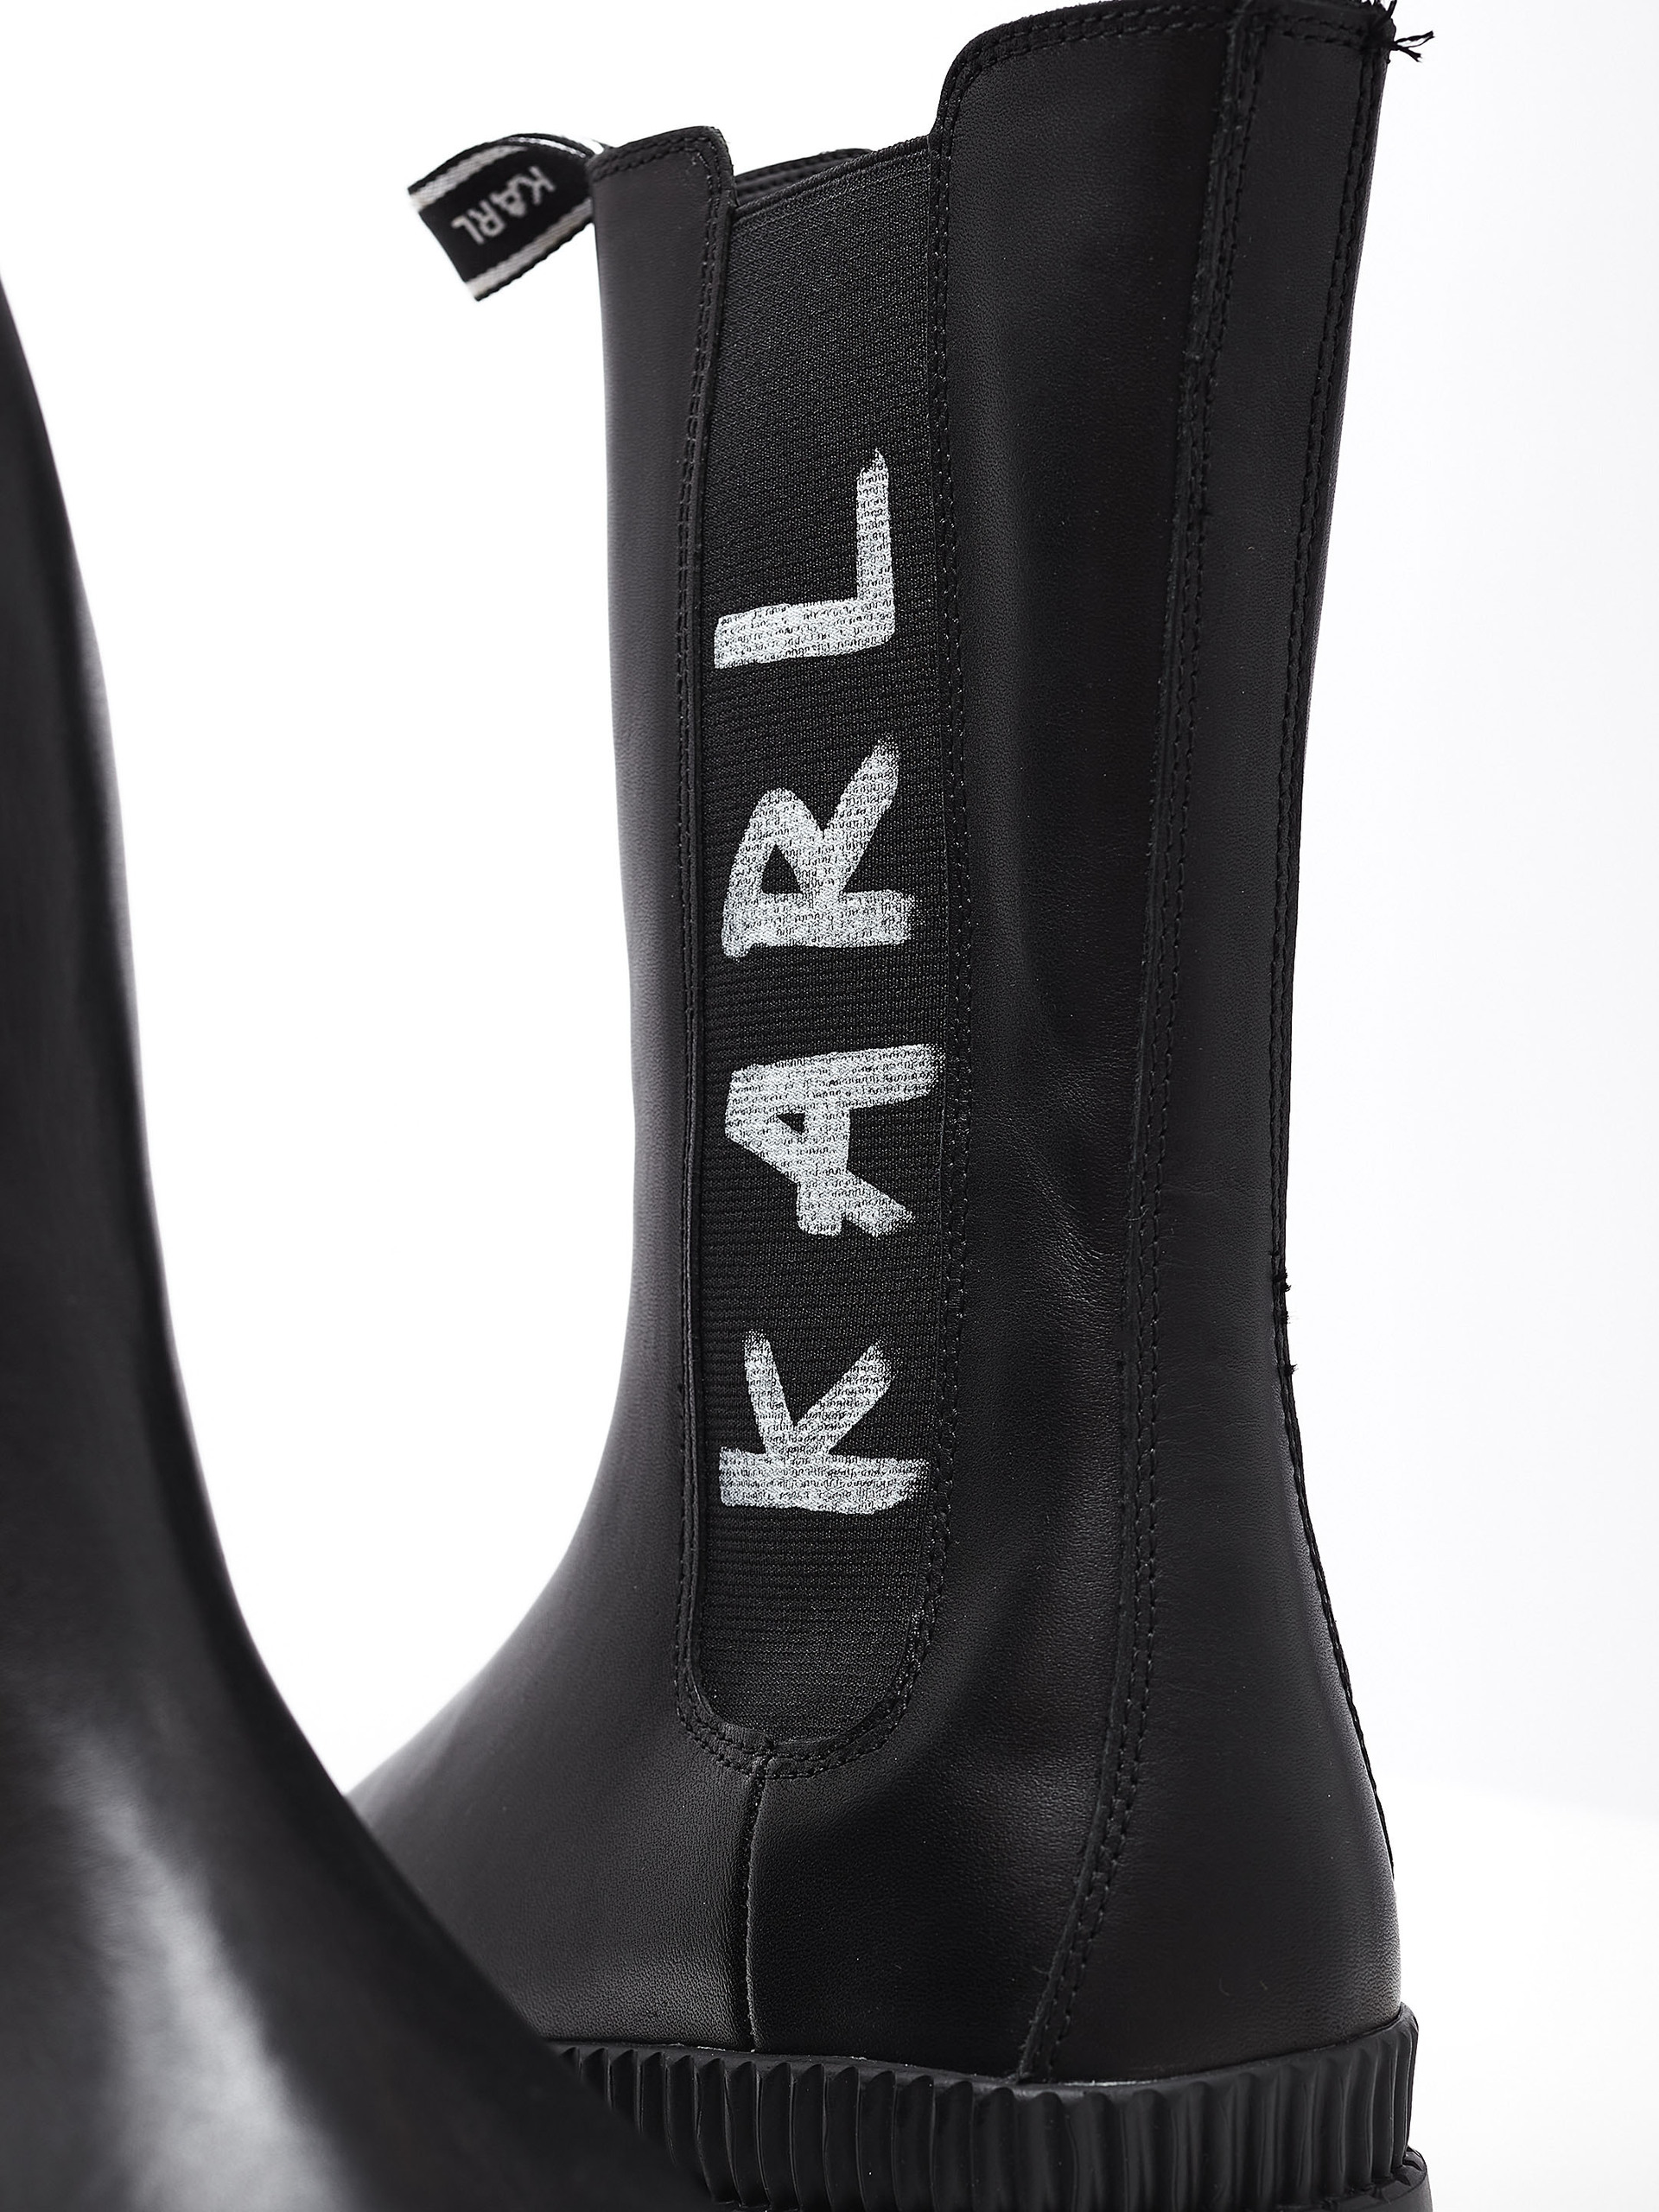 Ботинки Байкер Karl Lagerfeld купить за 19950 руб — доставка